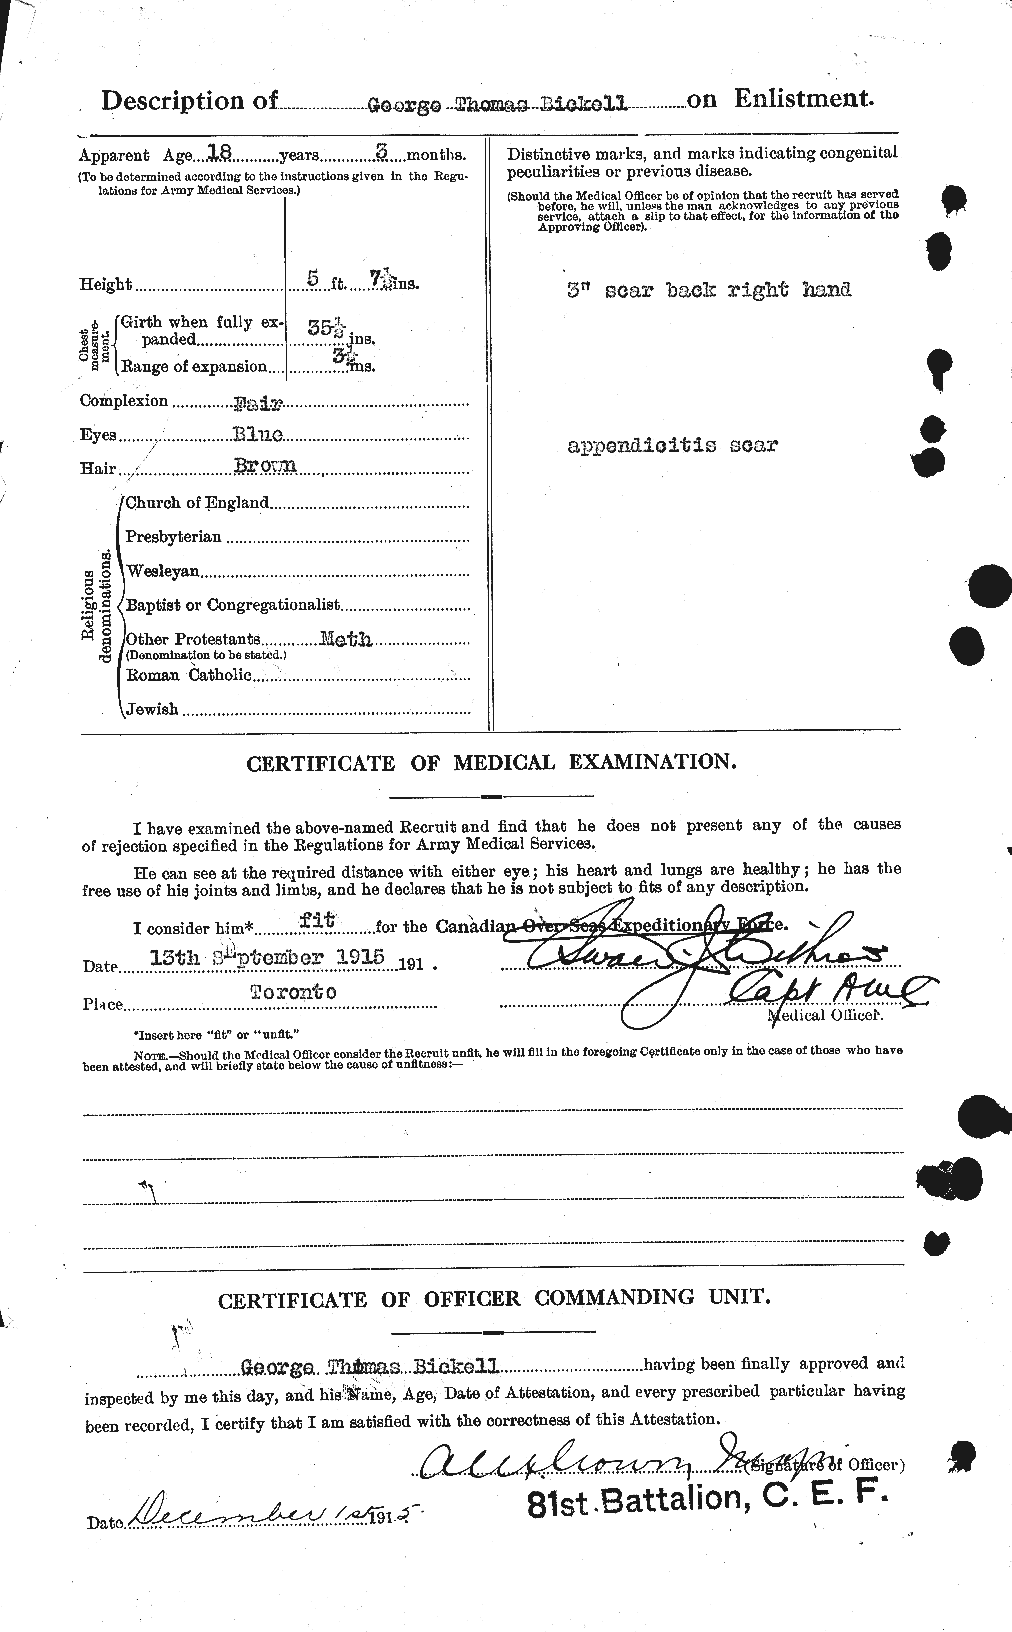 Dossiers du Personnel de la Première Guerre mondiale - CEC 244971b